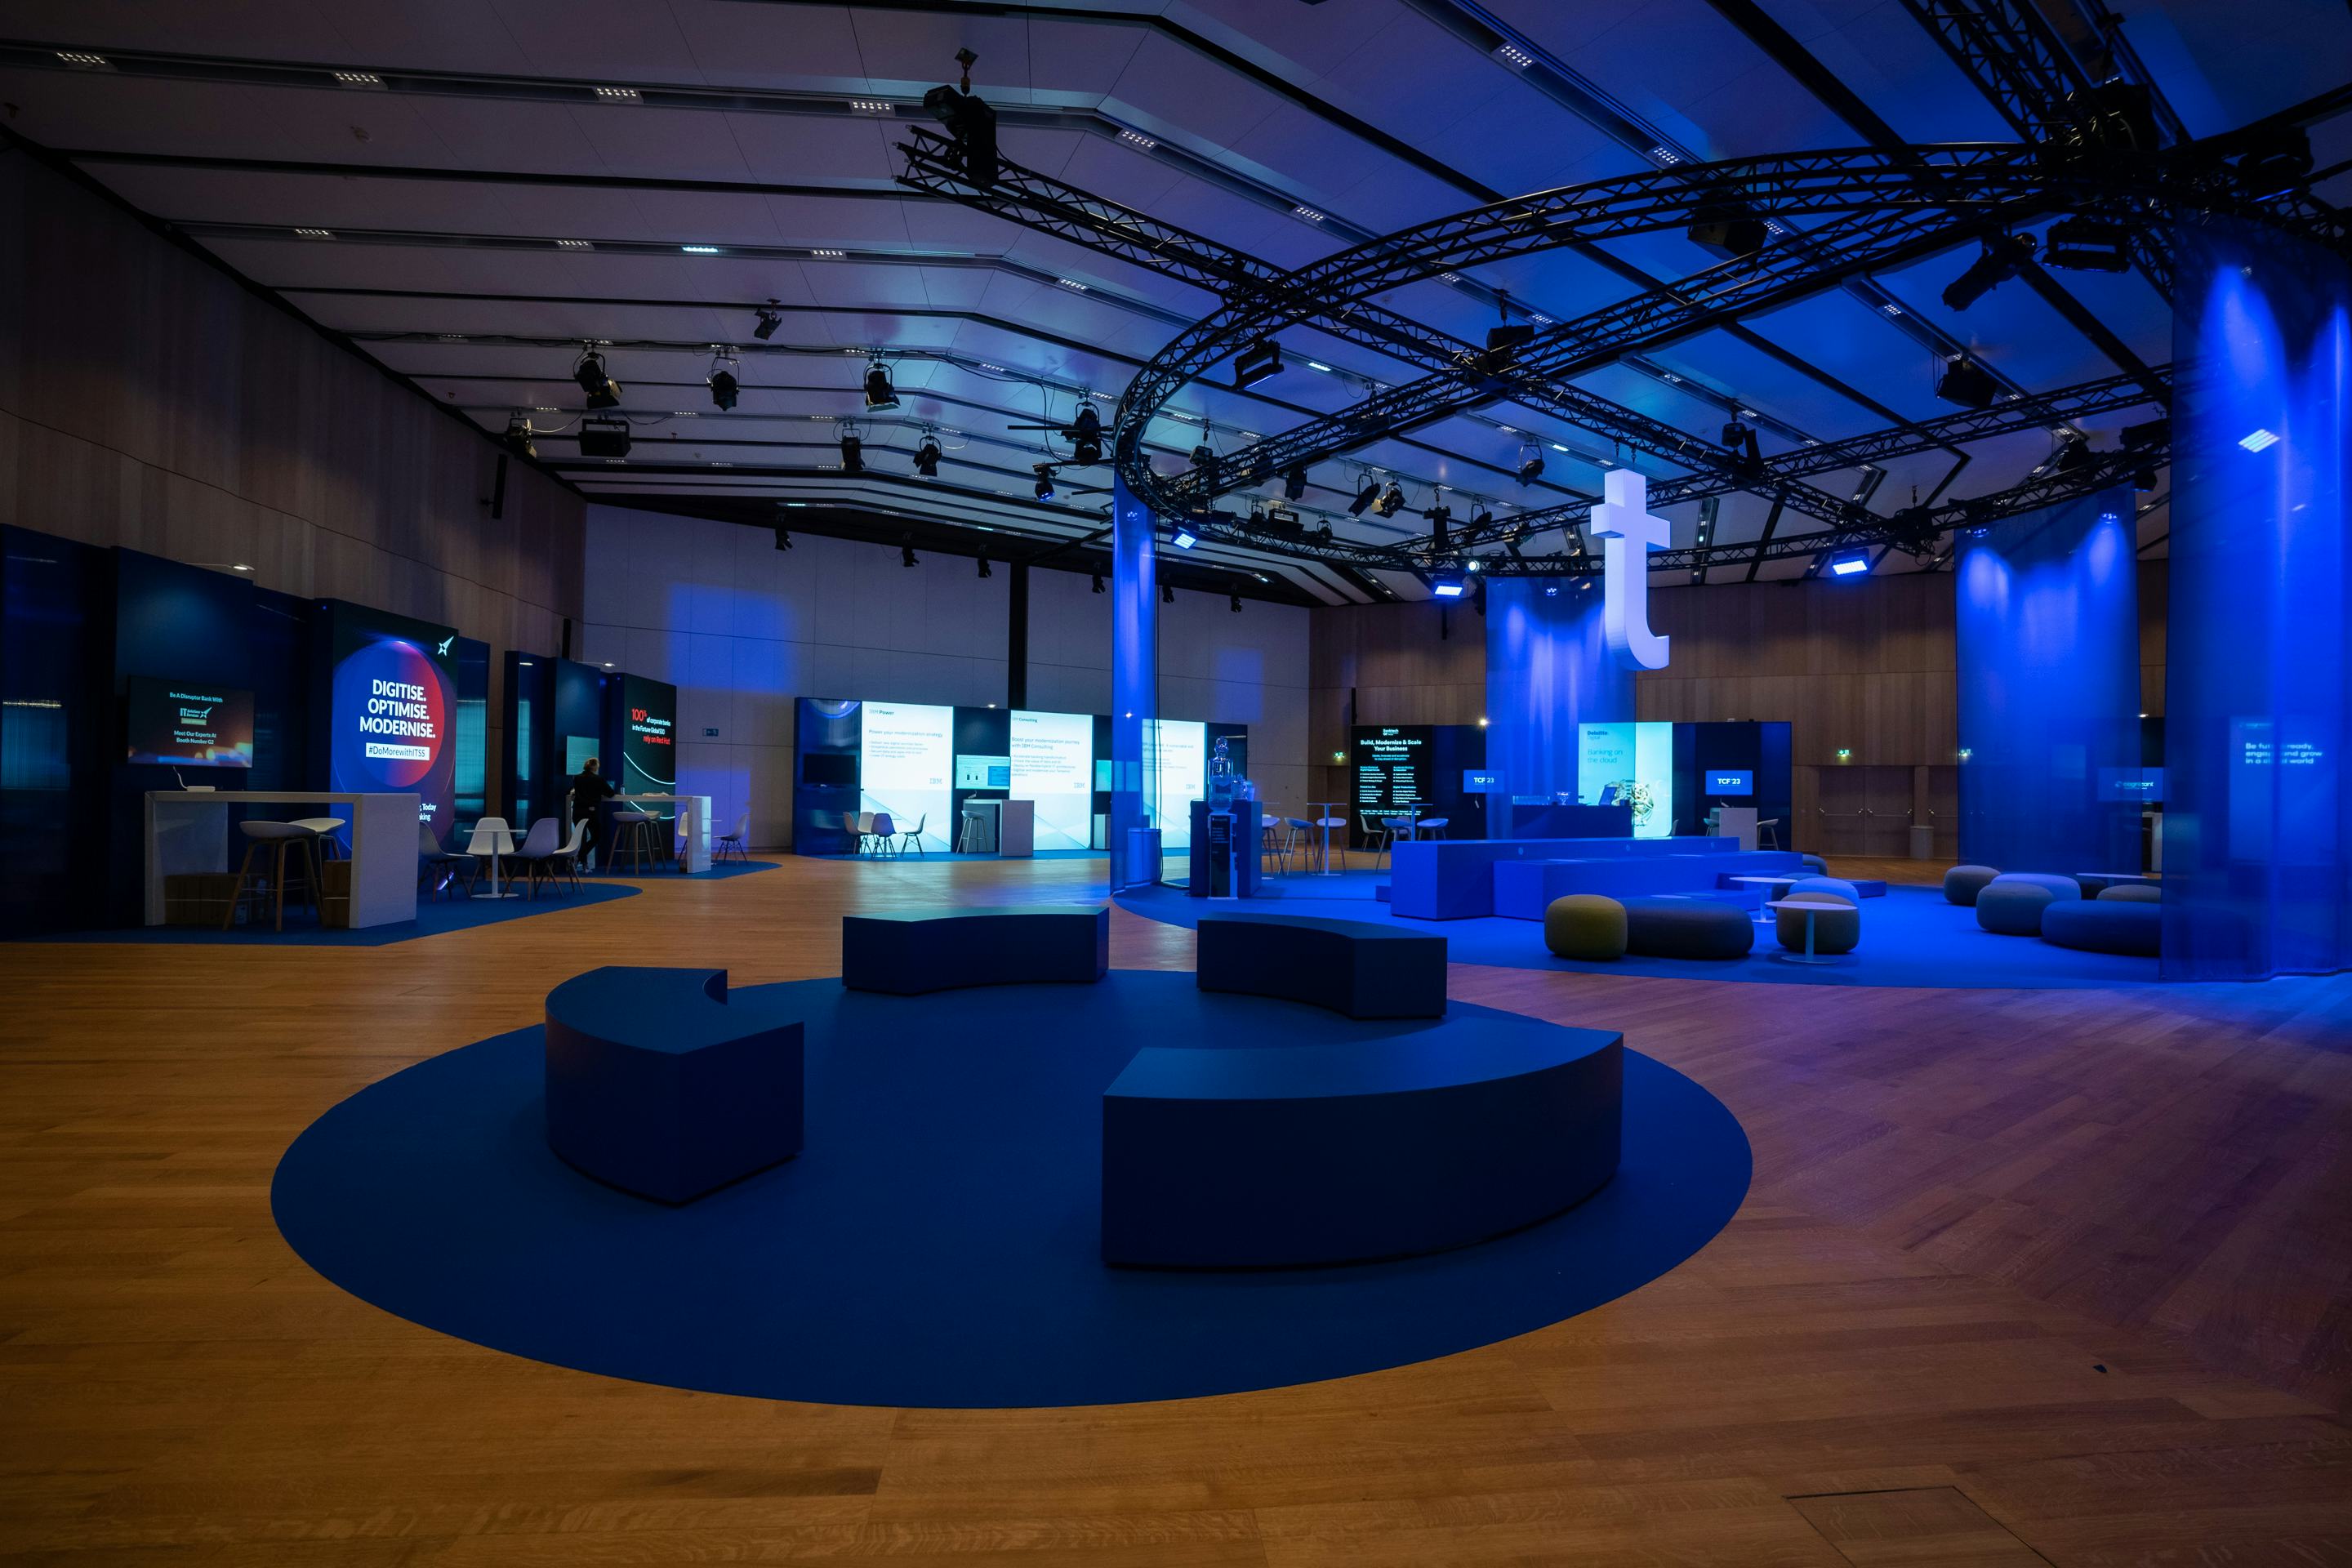 Foto: Raum mit blauen Vorhaengen, Networking-Bereichen und beleuchteten Screens